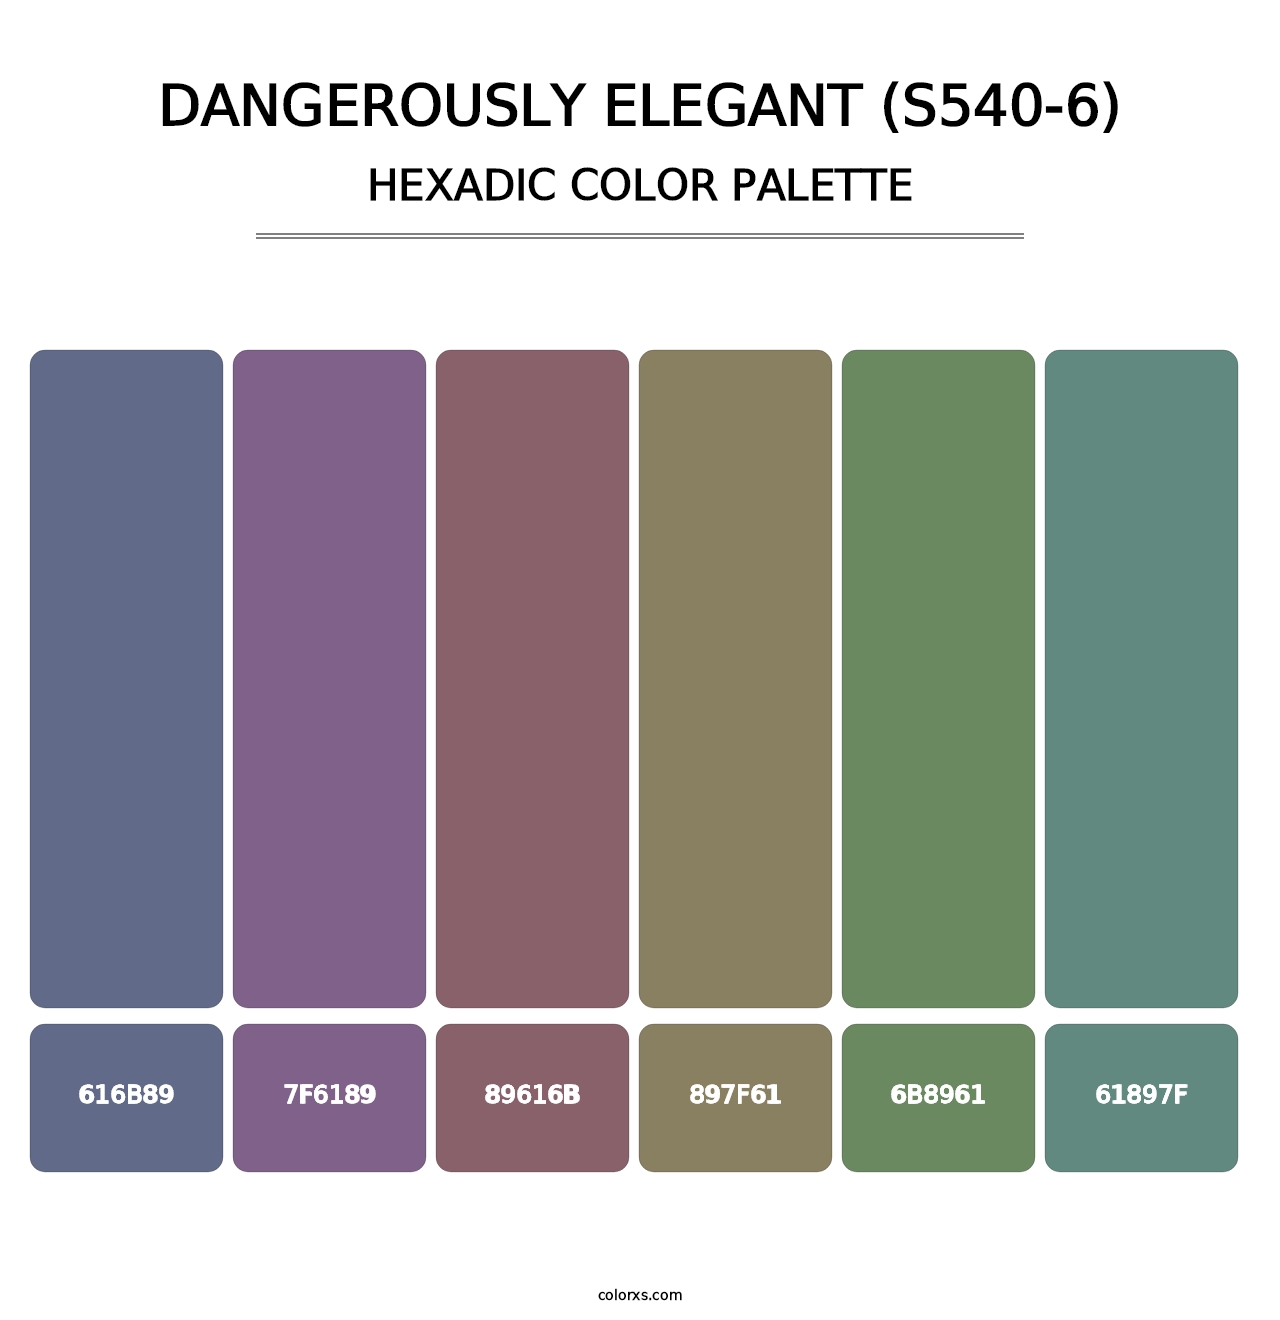 Dangerously Elegant (S540-6) - Hexadic Color Palette